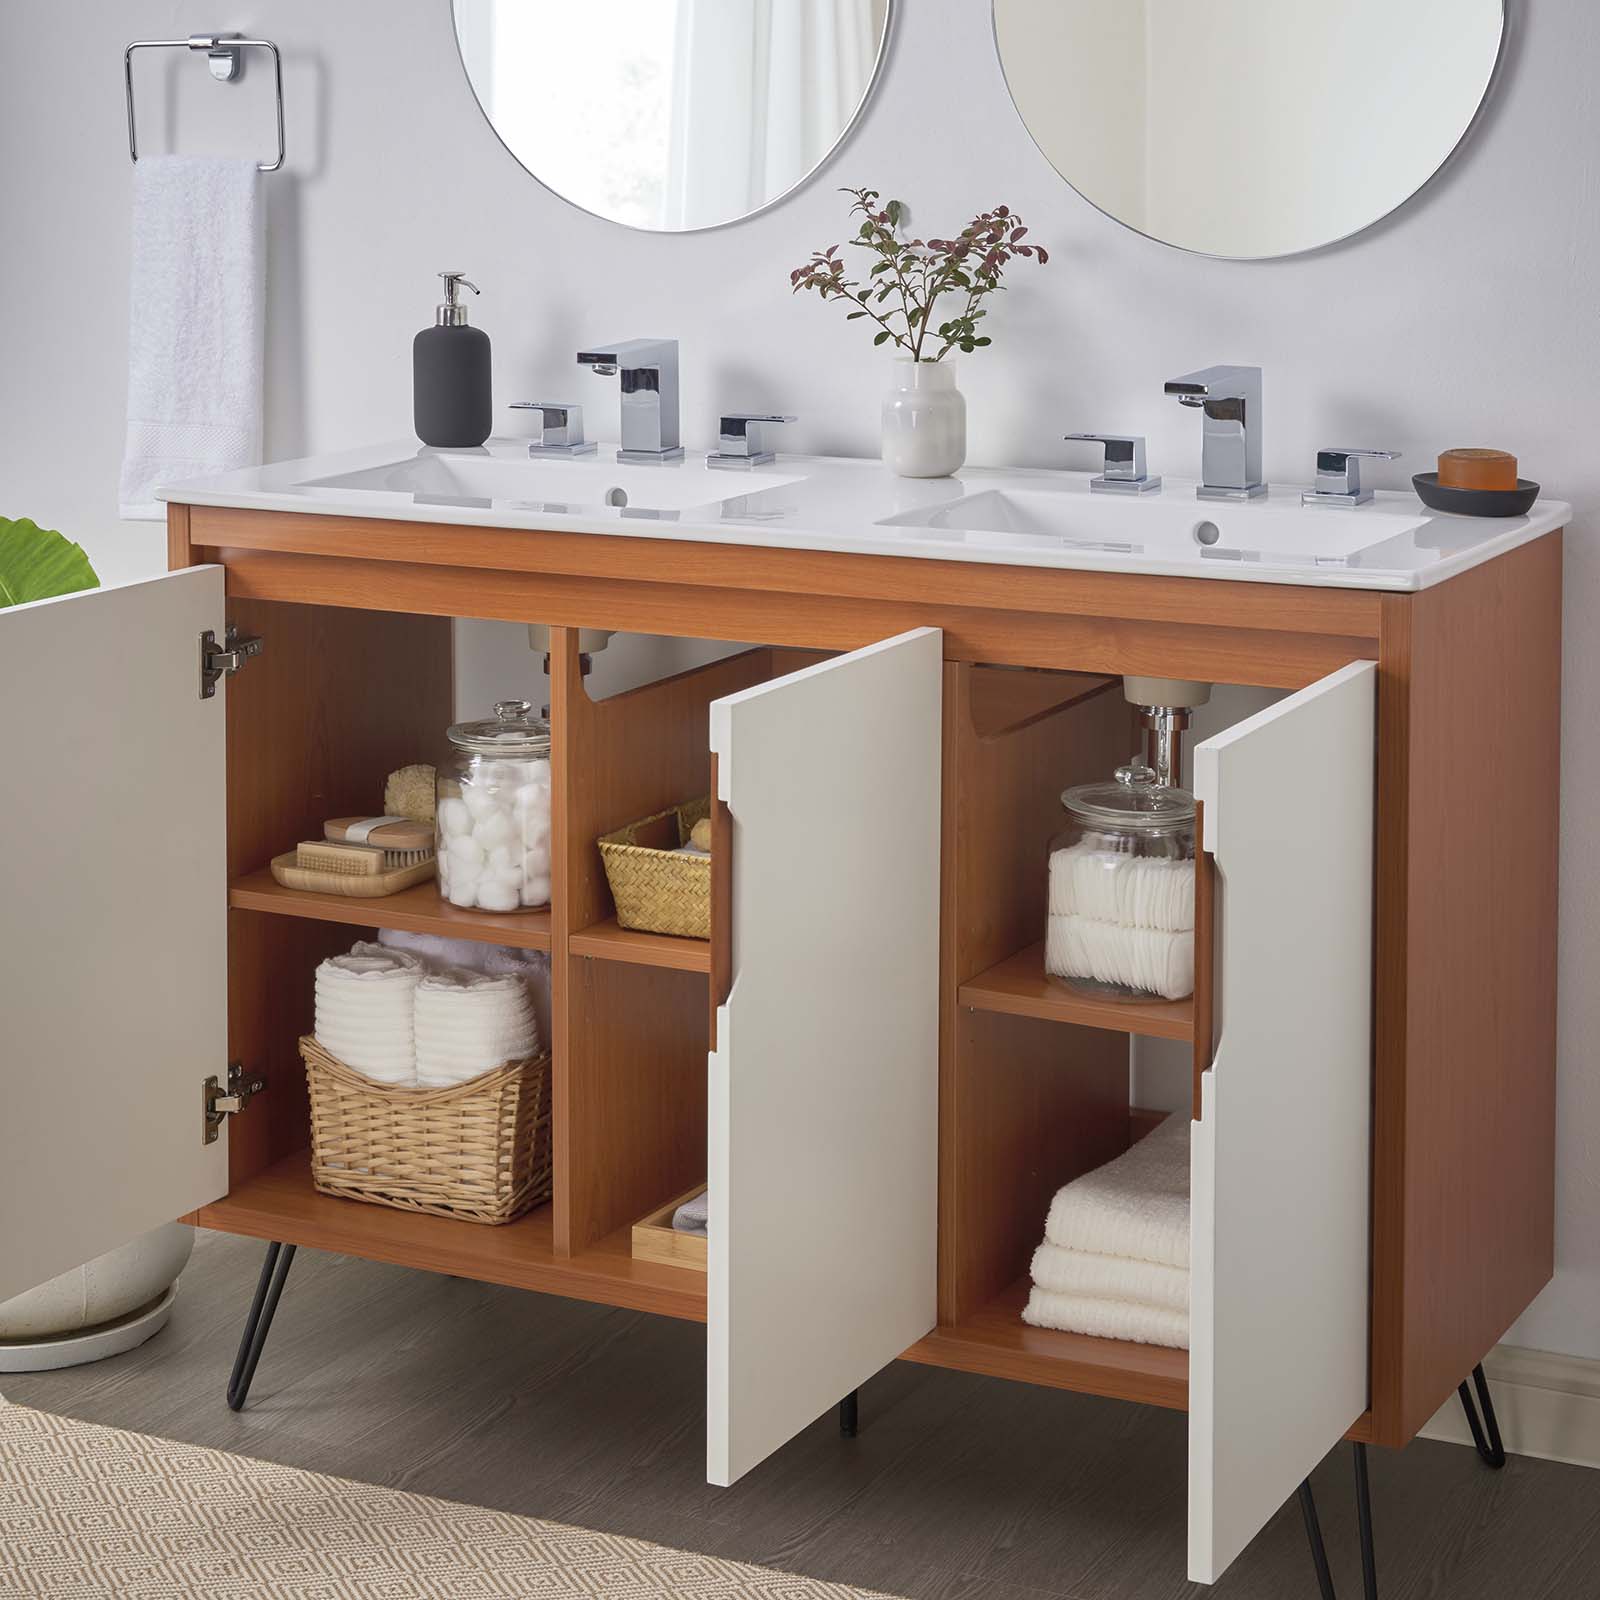 Energize 48" Double Sink Bathroom Vanity-Bathroom Vanity-Modway-Wall2Wall Furnishings